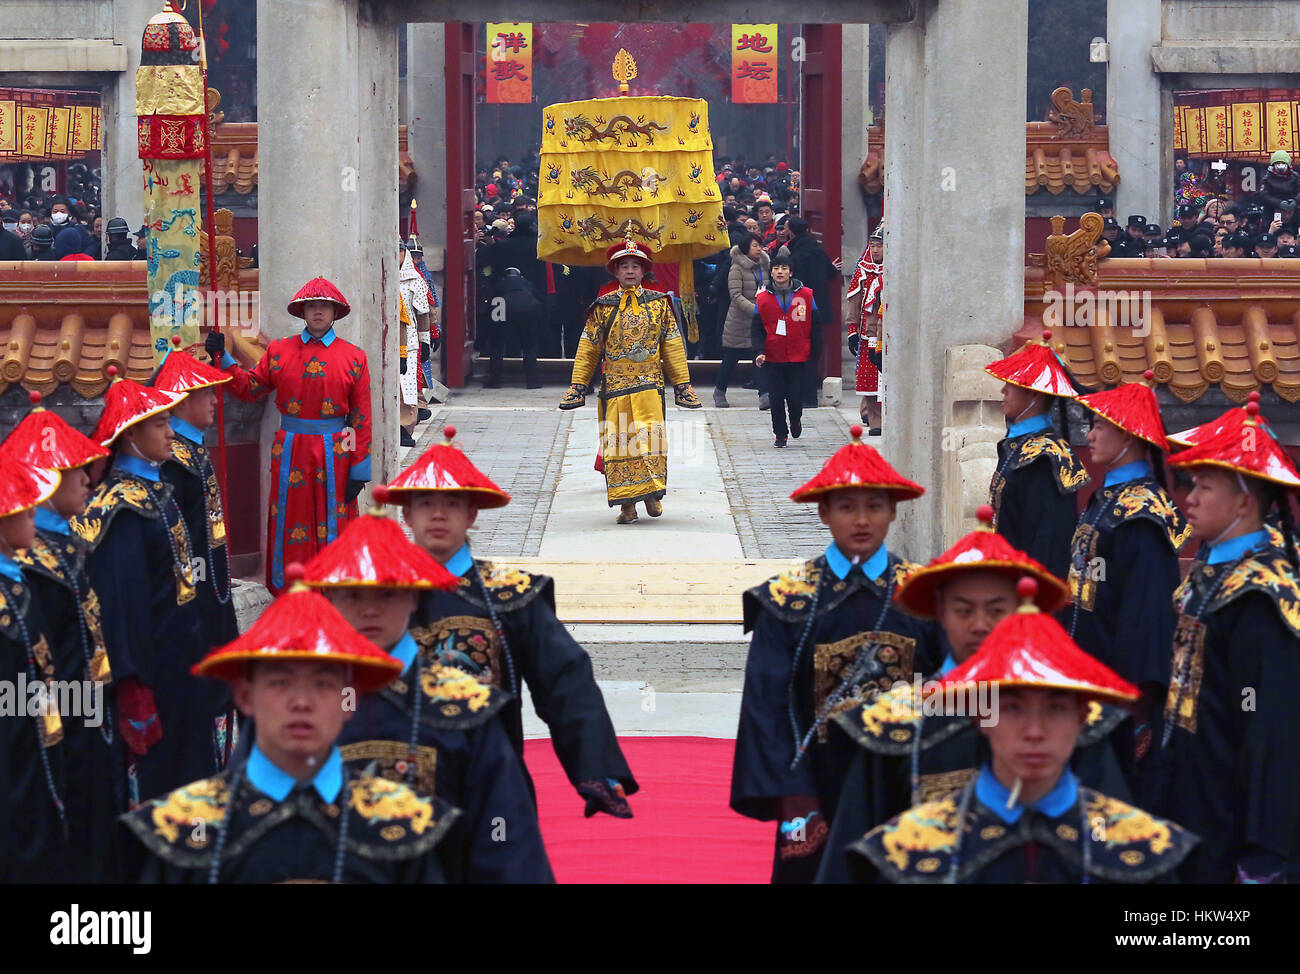 28 janvier, 2017 - BEIJING, CHINE - CHINOIS habillés en costume impérial Qing effectuer une cérémonie de culte du temple dans le Parc Ditan's Alter de la Terre pour célébrer le début de la nouvelle année - l'année du coq - au Parc Ditan à Beijing le 28 janvier 2017. Des millions de Chinois dirigé vers les temples et le parc de foires pour souhaiter un bon début de la nouvelle année lunaire, aussi connu comme le Festival de Printemps. (Crédit Image : © Stephen Shaver via Zuma sur le fil) Banque D'Images